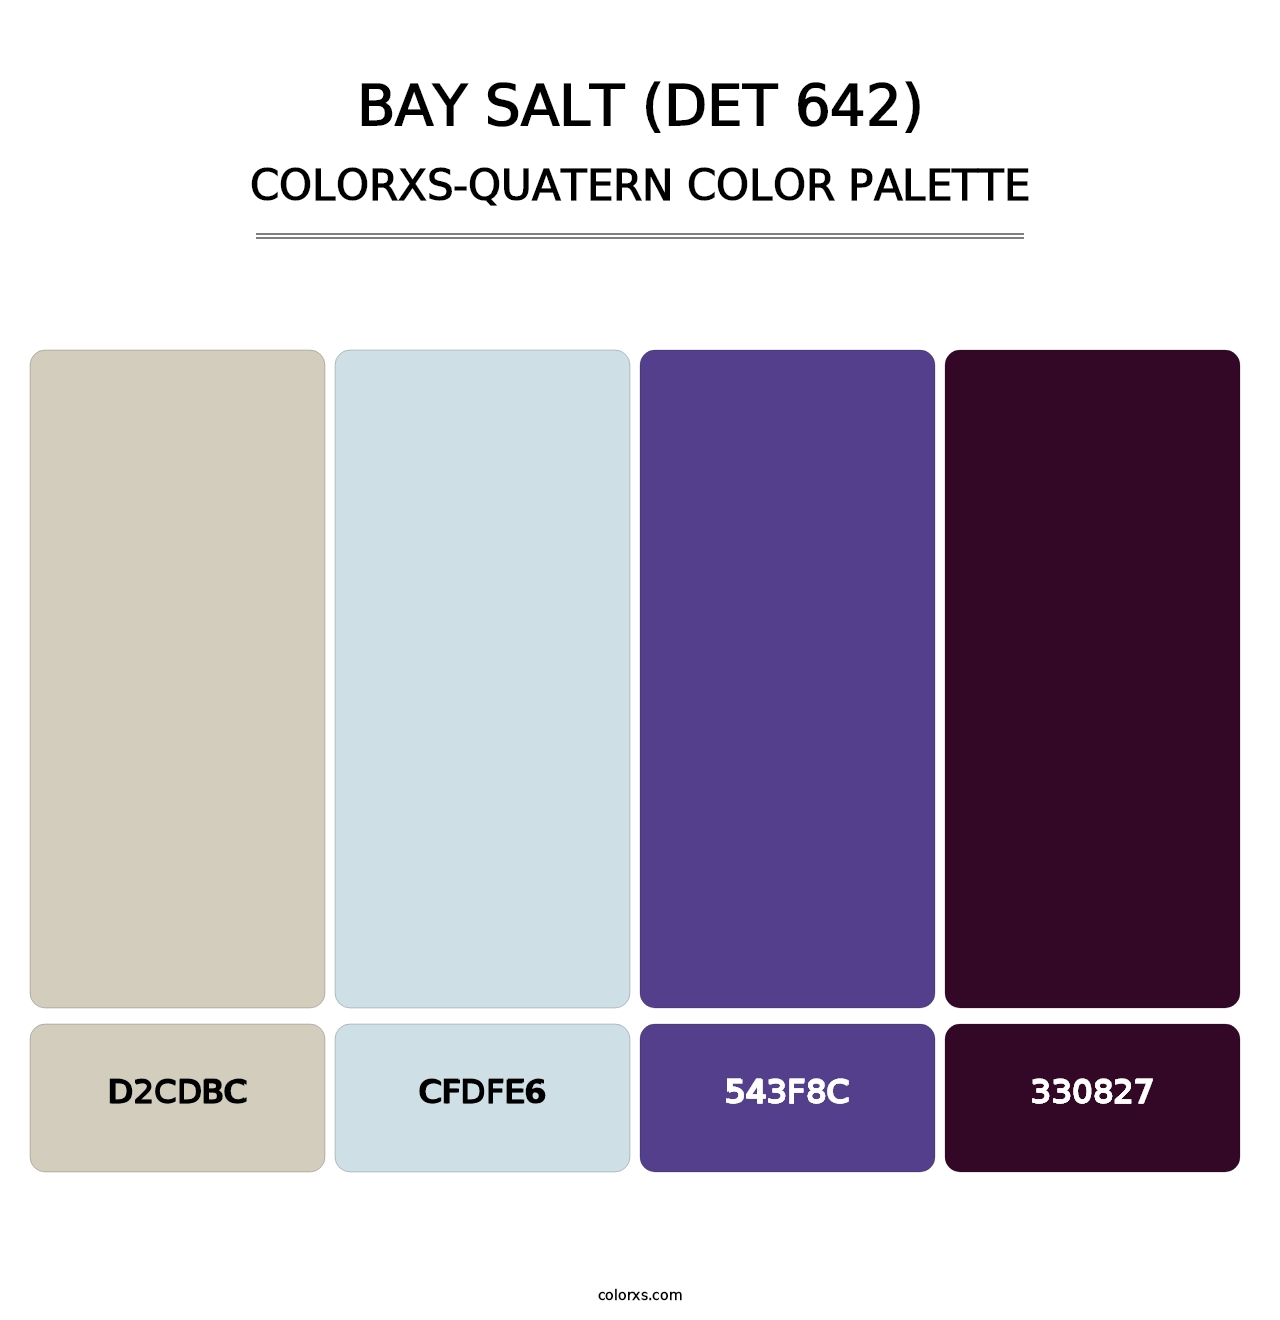 Bay Salt (DET 642) - Colorxs Quatern Palette